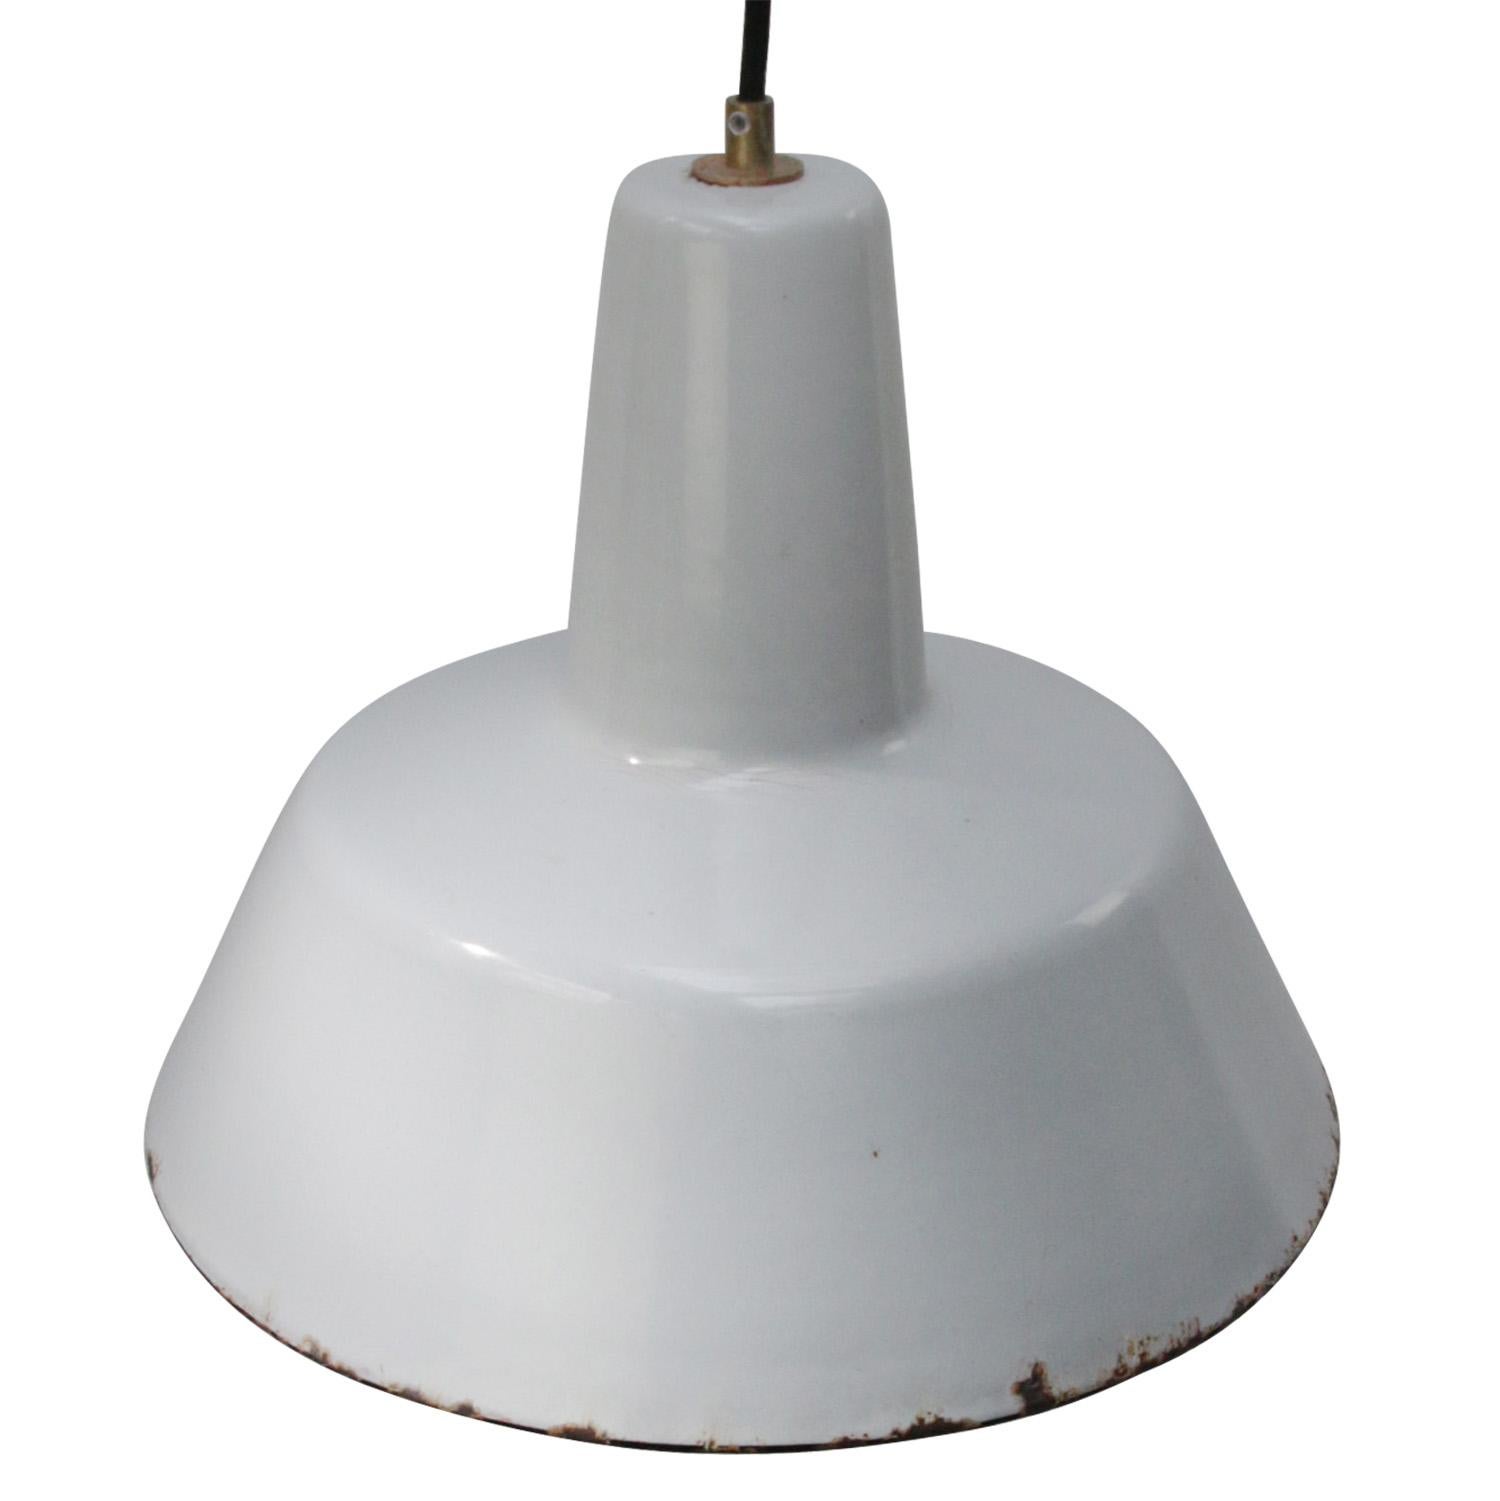 Lampe à suspension industrielle fabriquée par Philips, Pays-Bas
Intérieur blanc émaillé gris

Poids : 1,50 kg / 3,3 lb

Le prix est fixé par article individuel. Toutes les lampes ont été rendues conformes aux normes internationales pour les